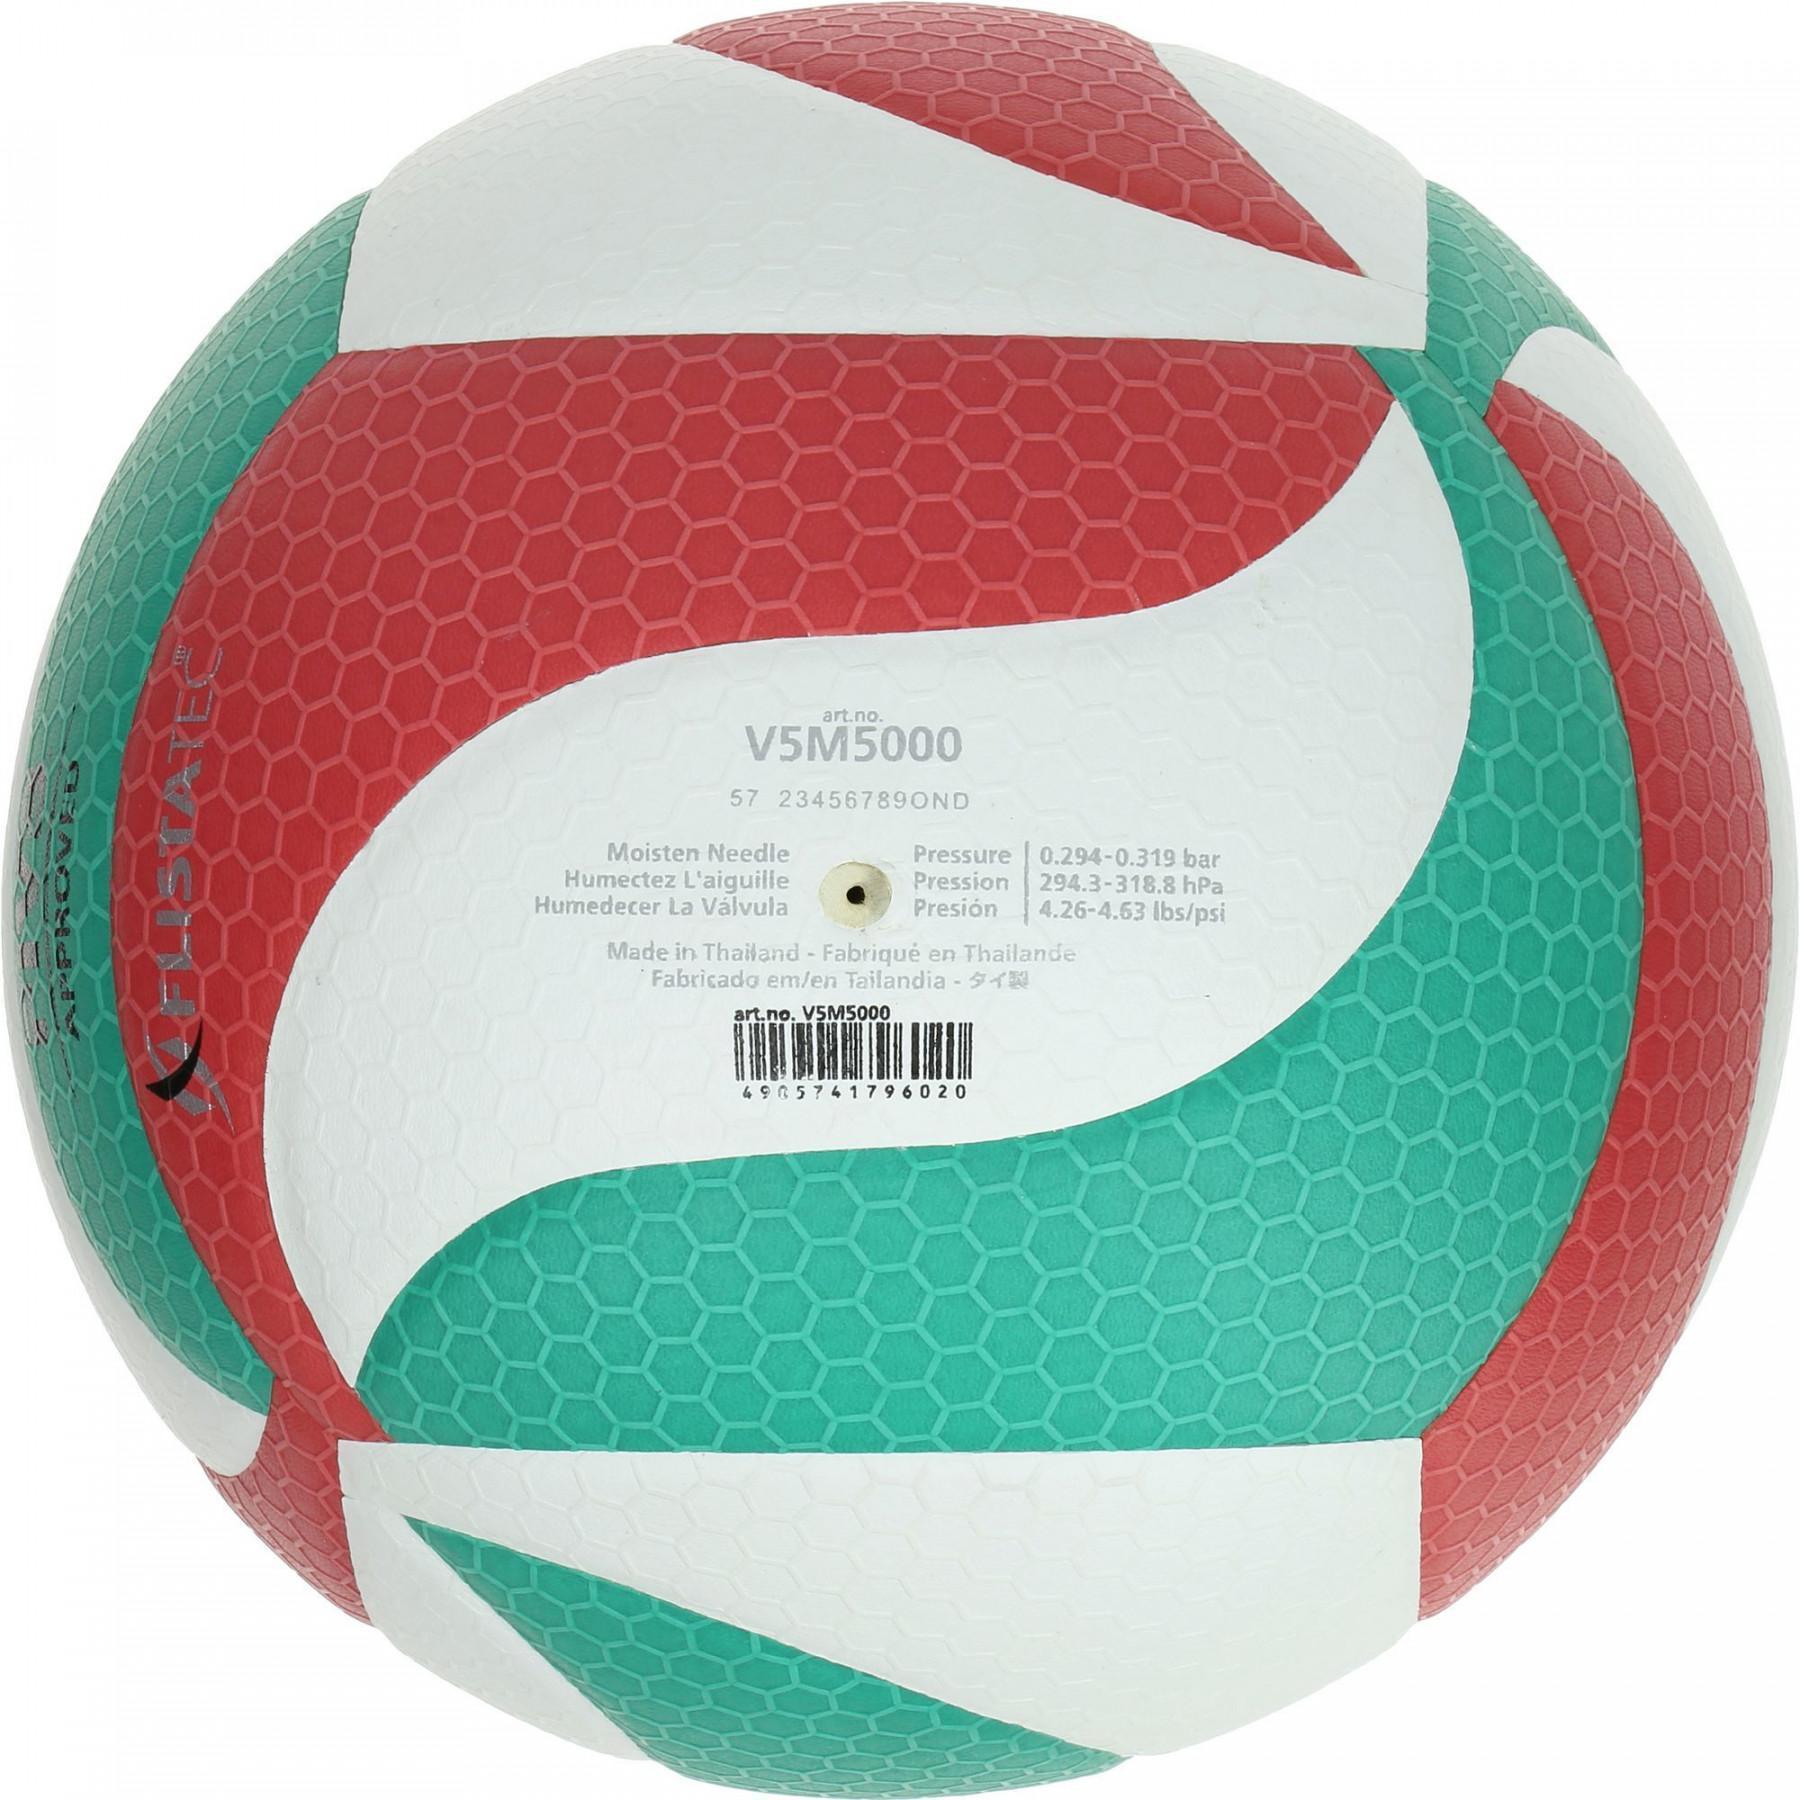 Balón de competición Molten V5M5000 LNV